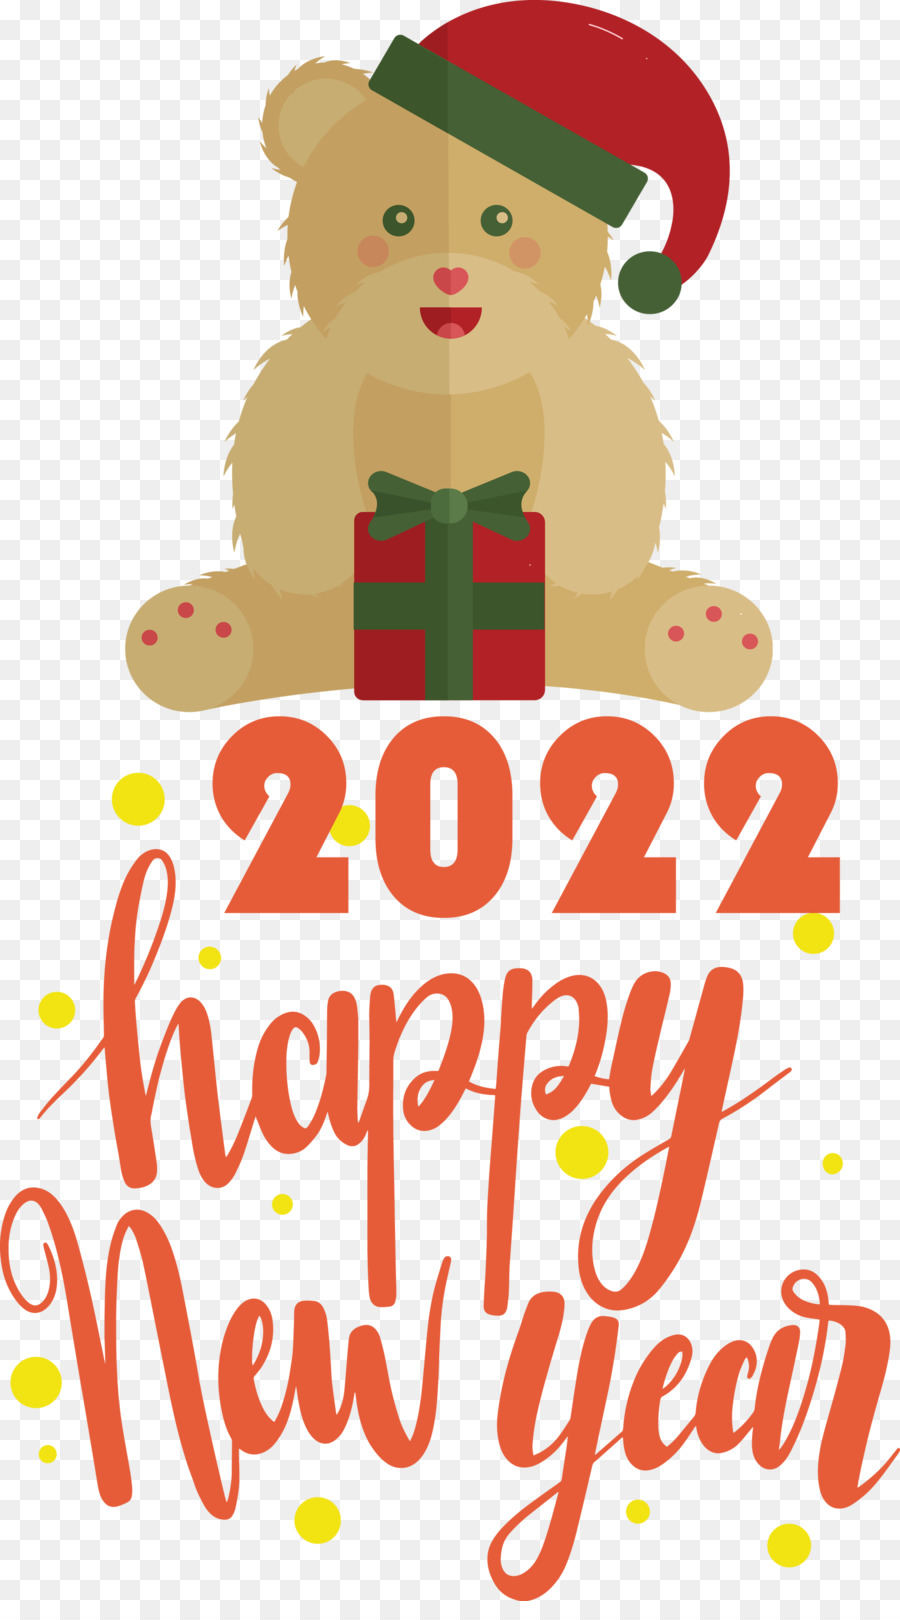 2022 Frohes Neues Jahr 2022 Neues Jahr Happy 2022 Neues Jahr - 